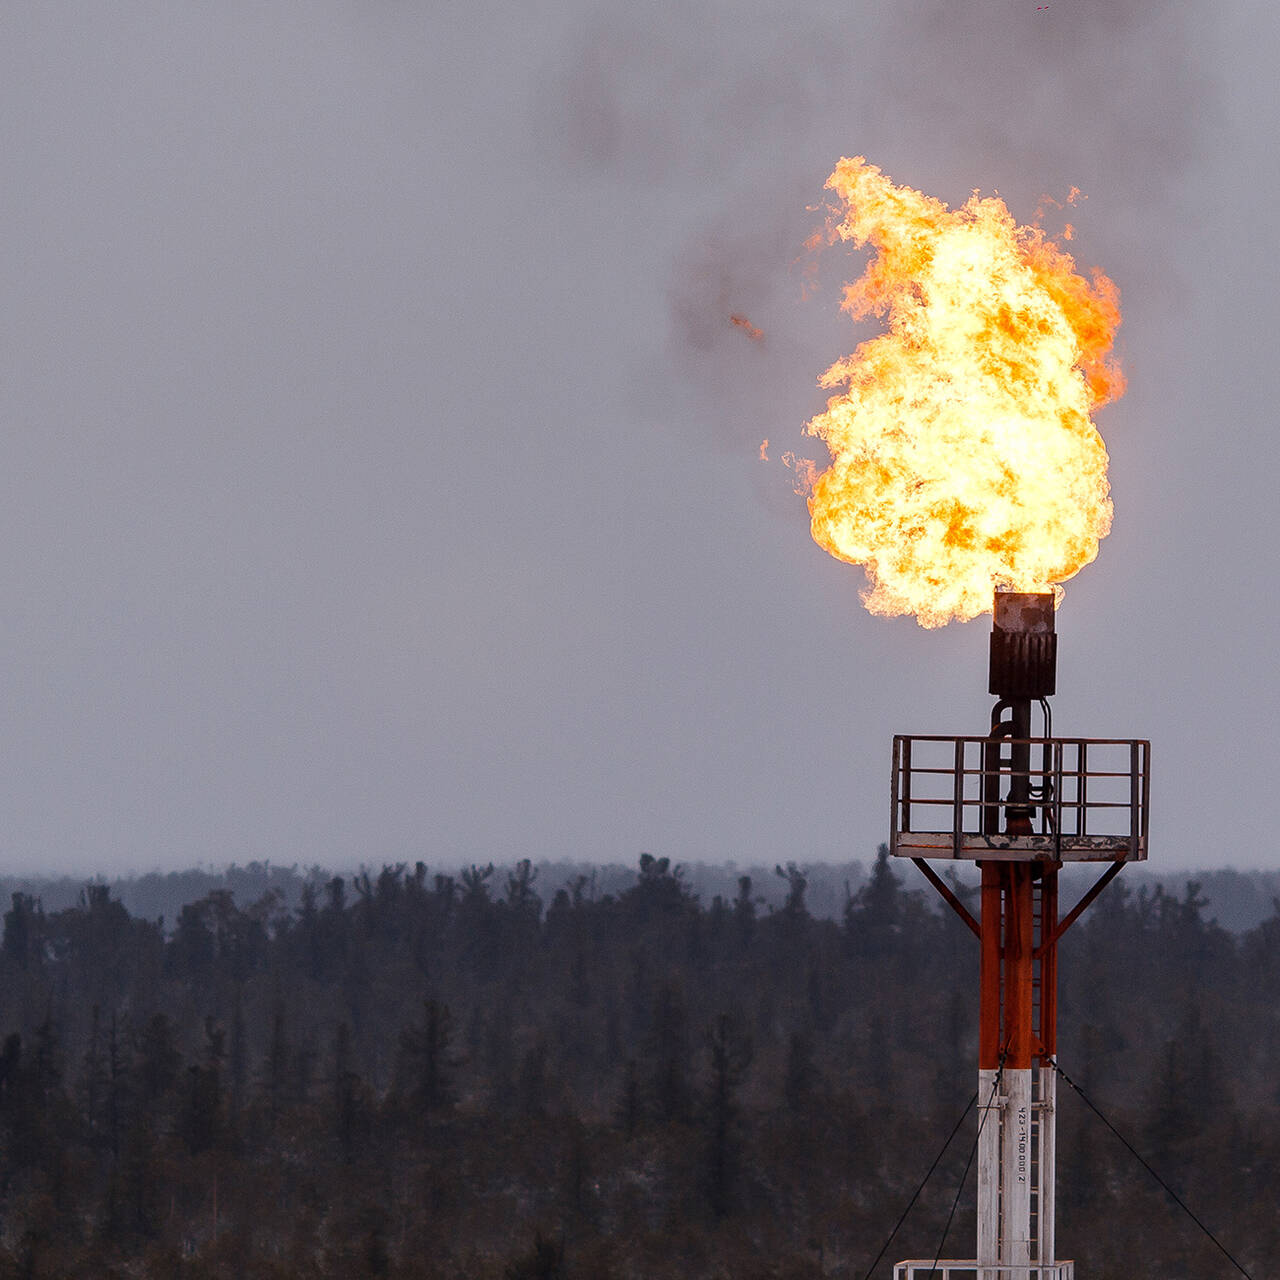 Сжигание нефтяного газа в факелах. Факел сжигания попутного газа. Попутный нефтяной ГАЗ месторождения. Сжигание попутного нефтяного газа в факелах в районах добычи нефти. Факел попутного нефтяного газа.